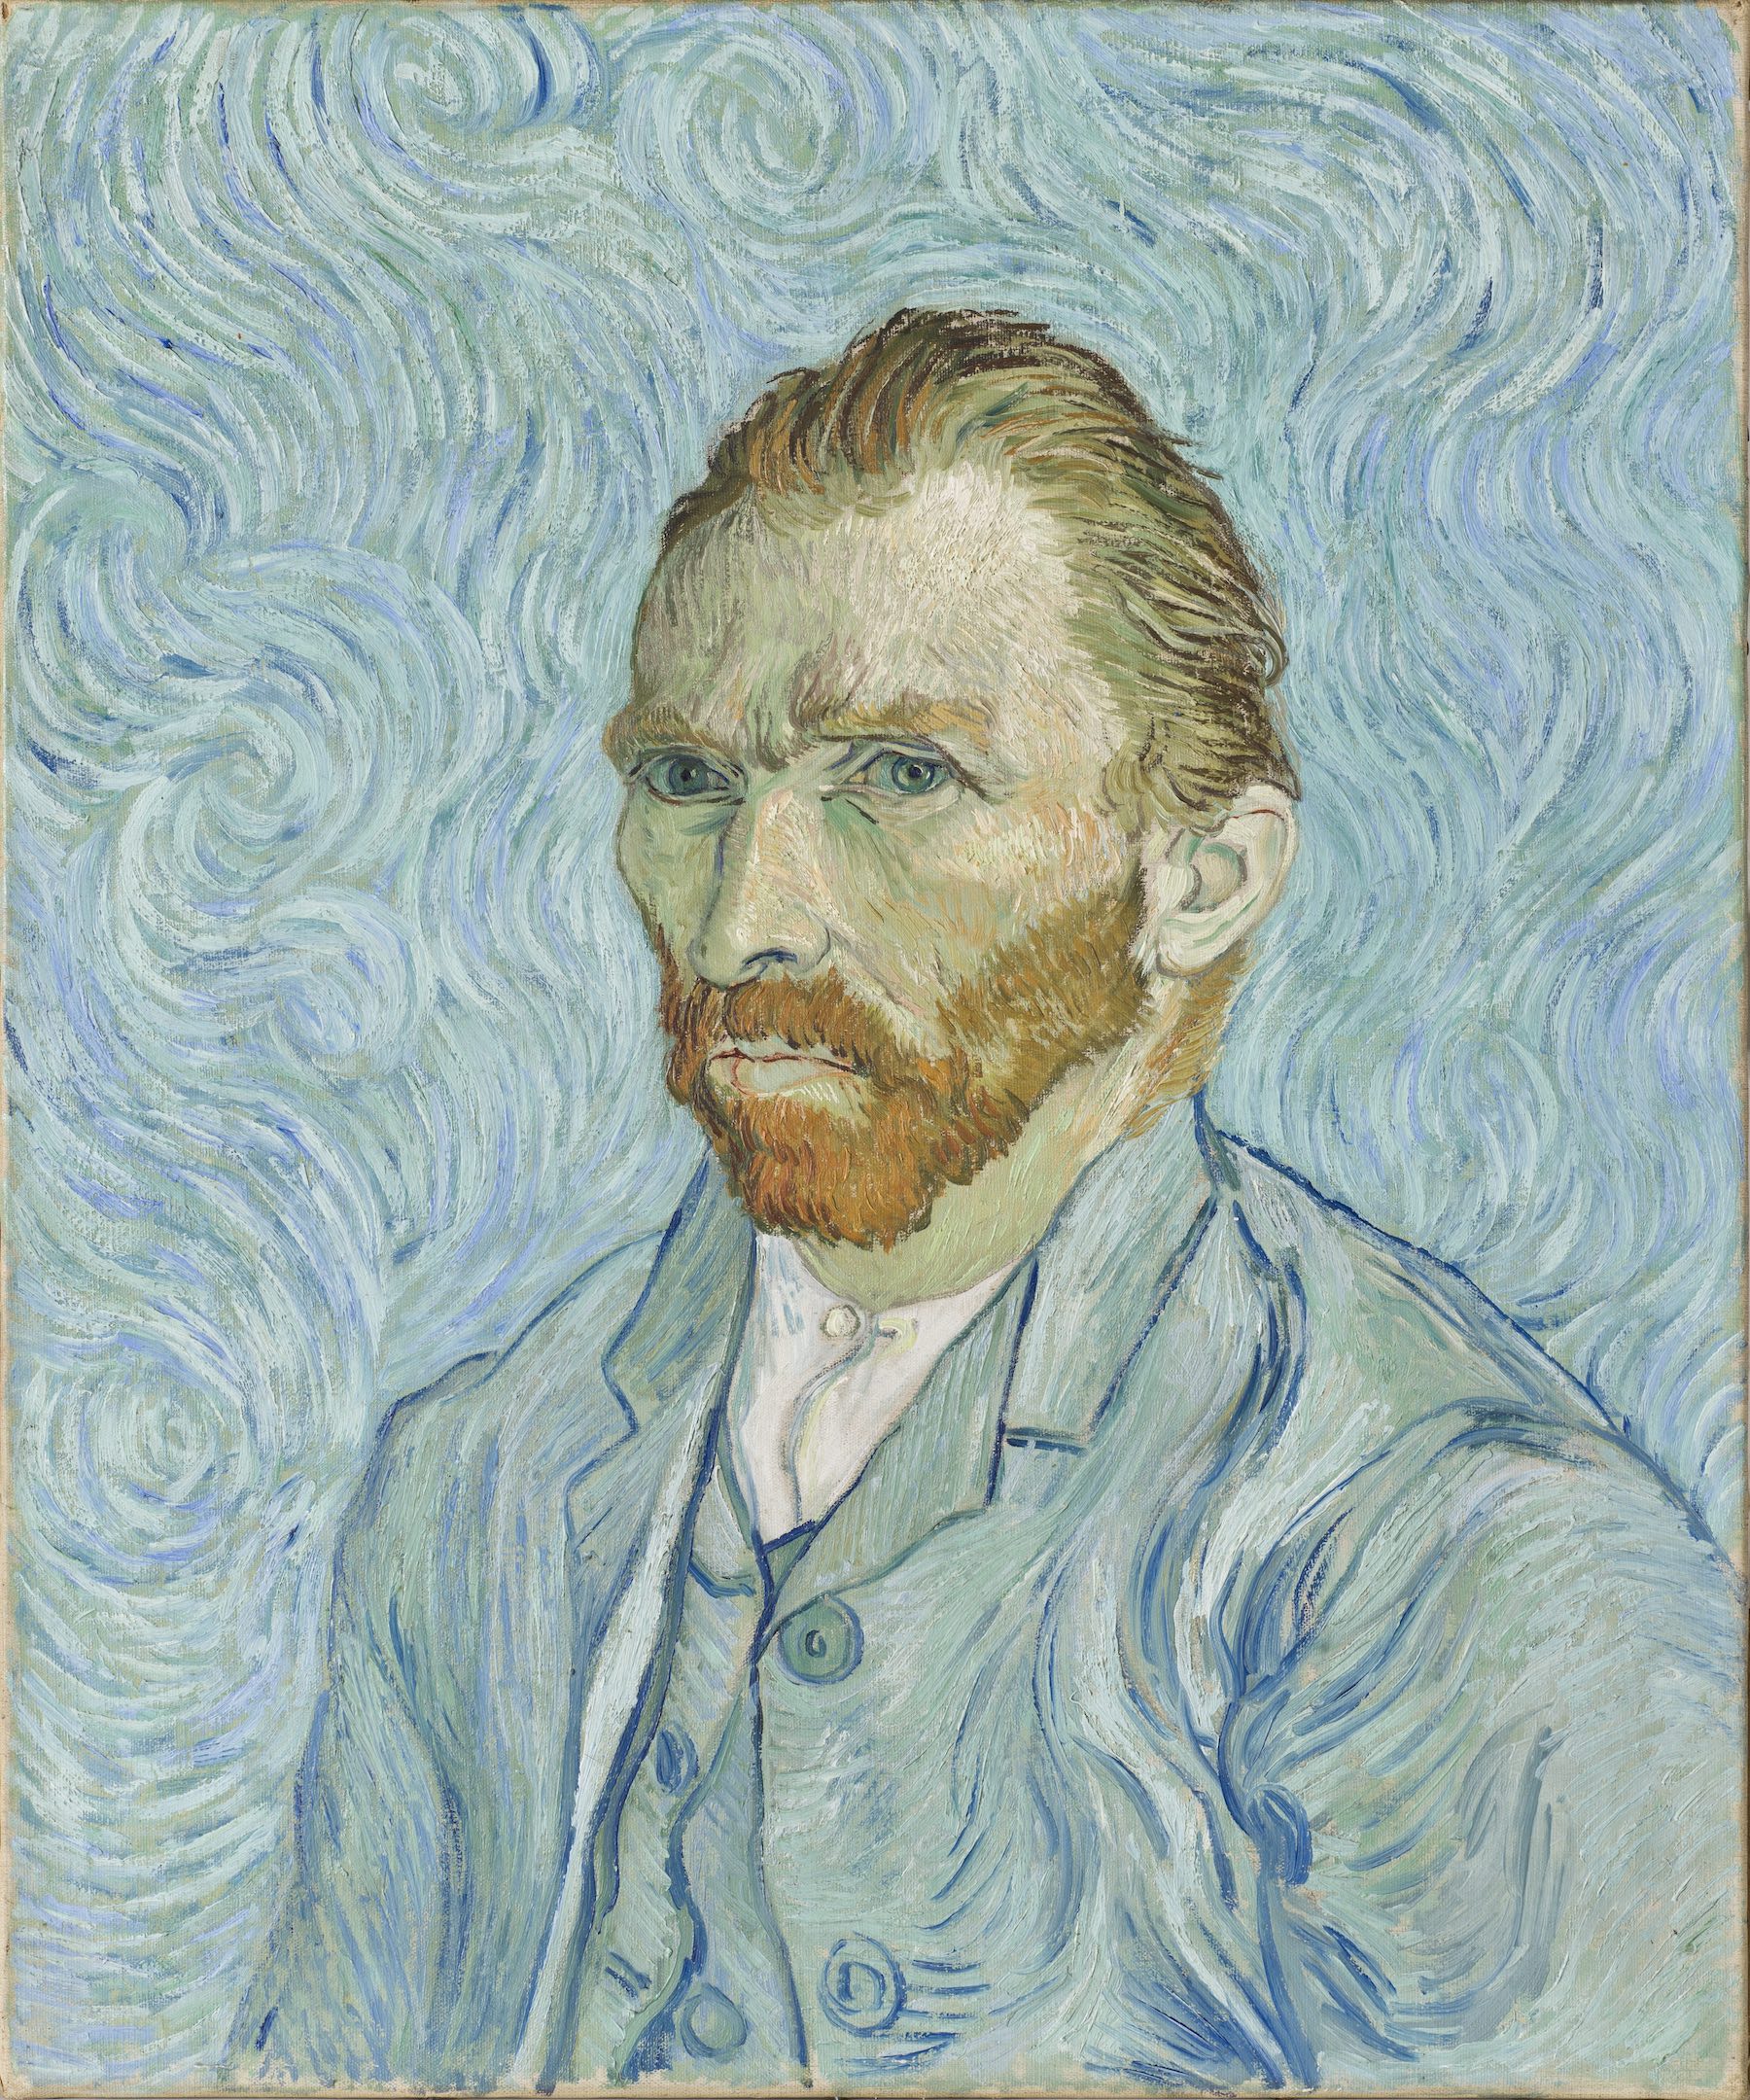 Vincent van Gogh (1853-1890), Autoportrait, 1889. Huile sur toile, 65 x 54 cm. Paris, musée d’Orsay. Photo service de presse. © Musée d’Orsay, dist. RMN / P. Schmidt